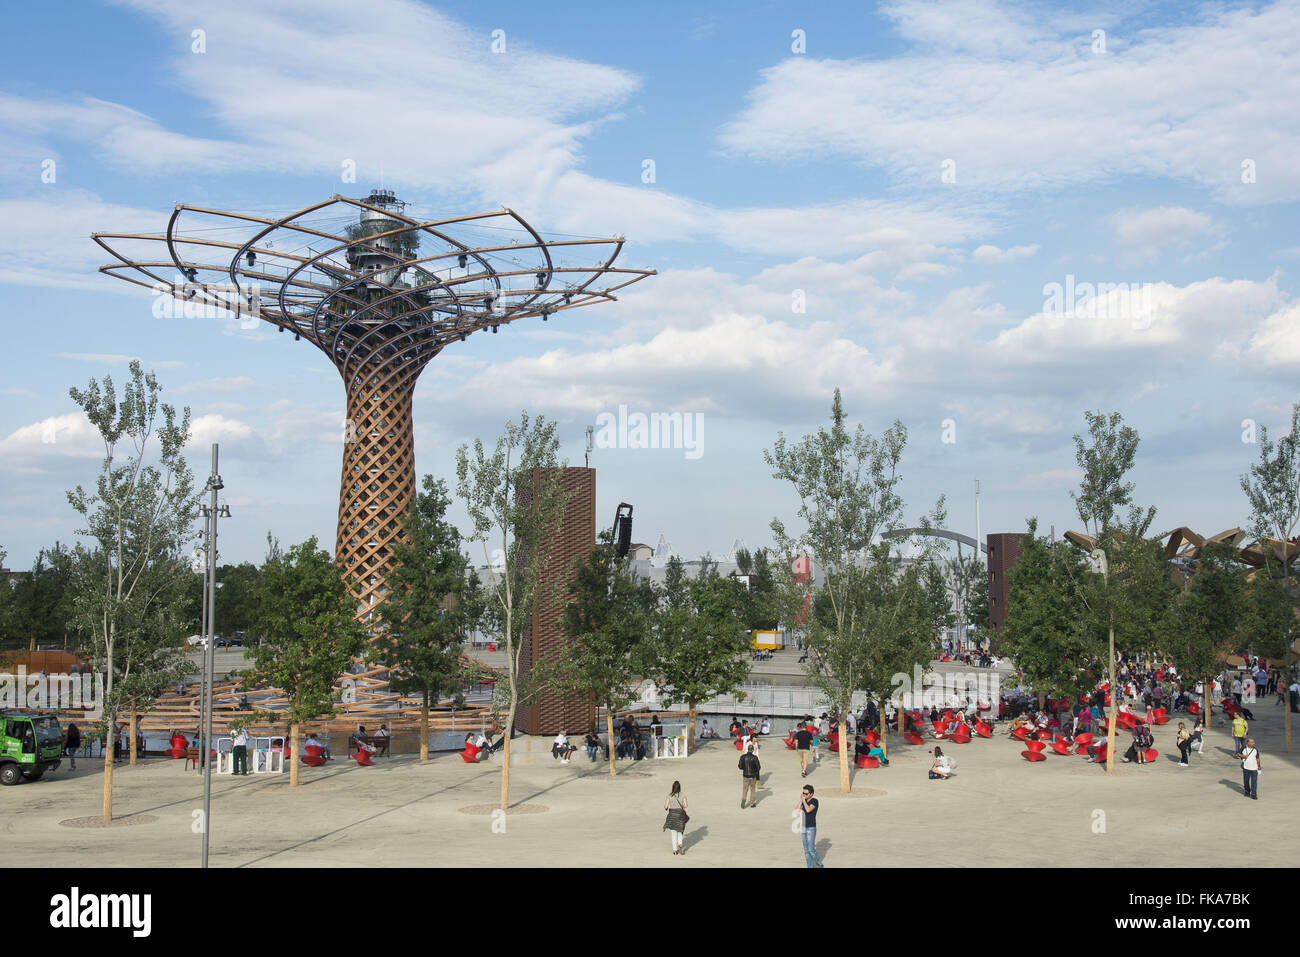 Árvore da Vida na Expo Milano 2015 - monumento símbolo da Exposição Universal Foto Stock